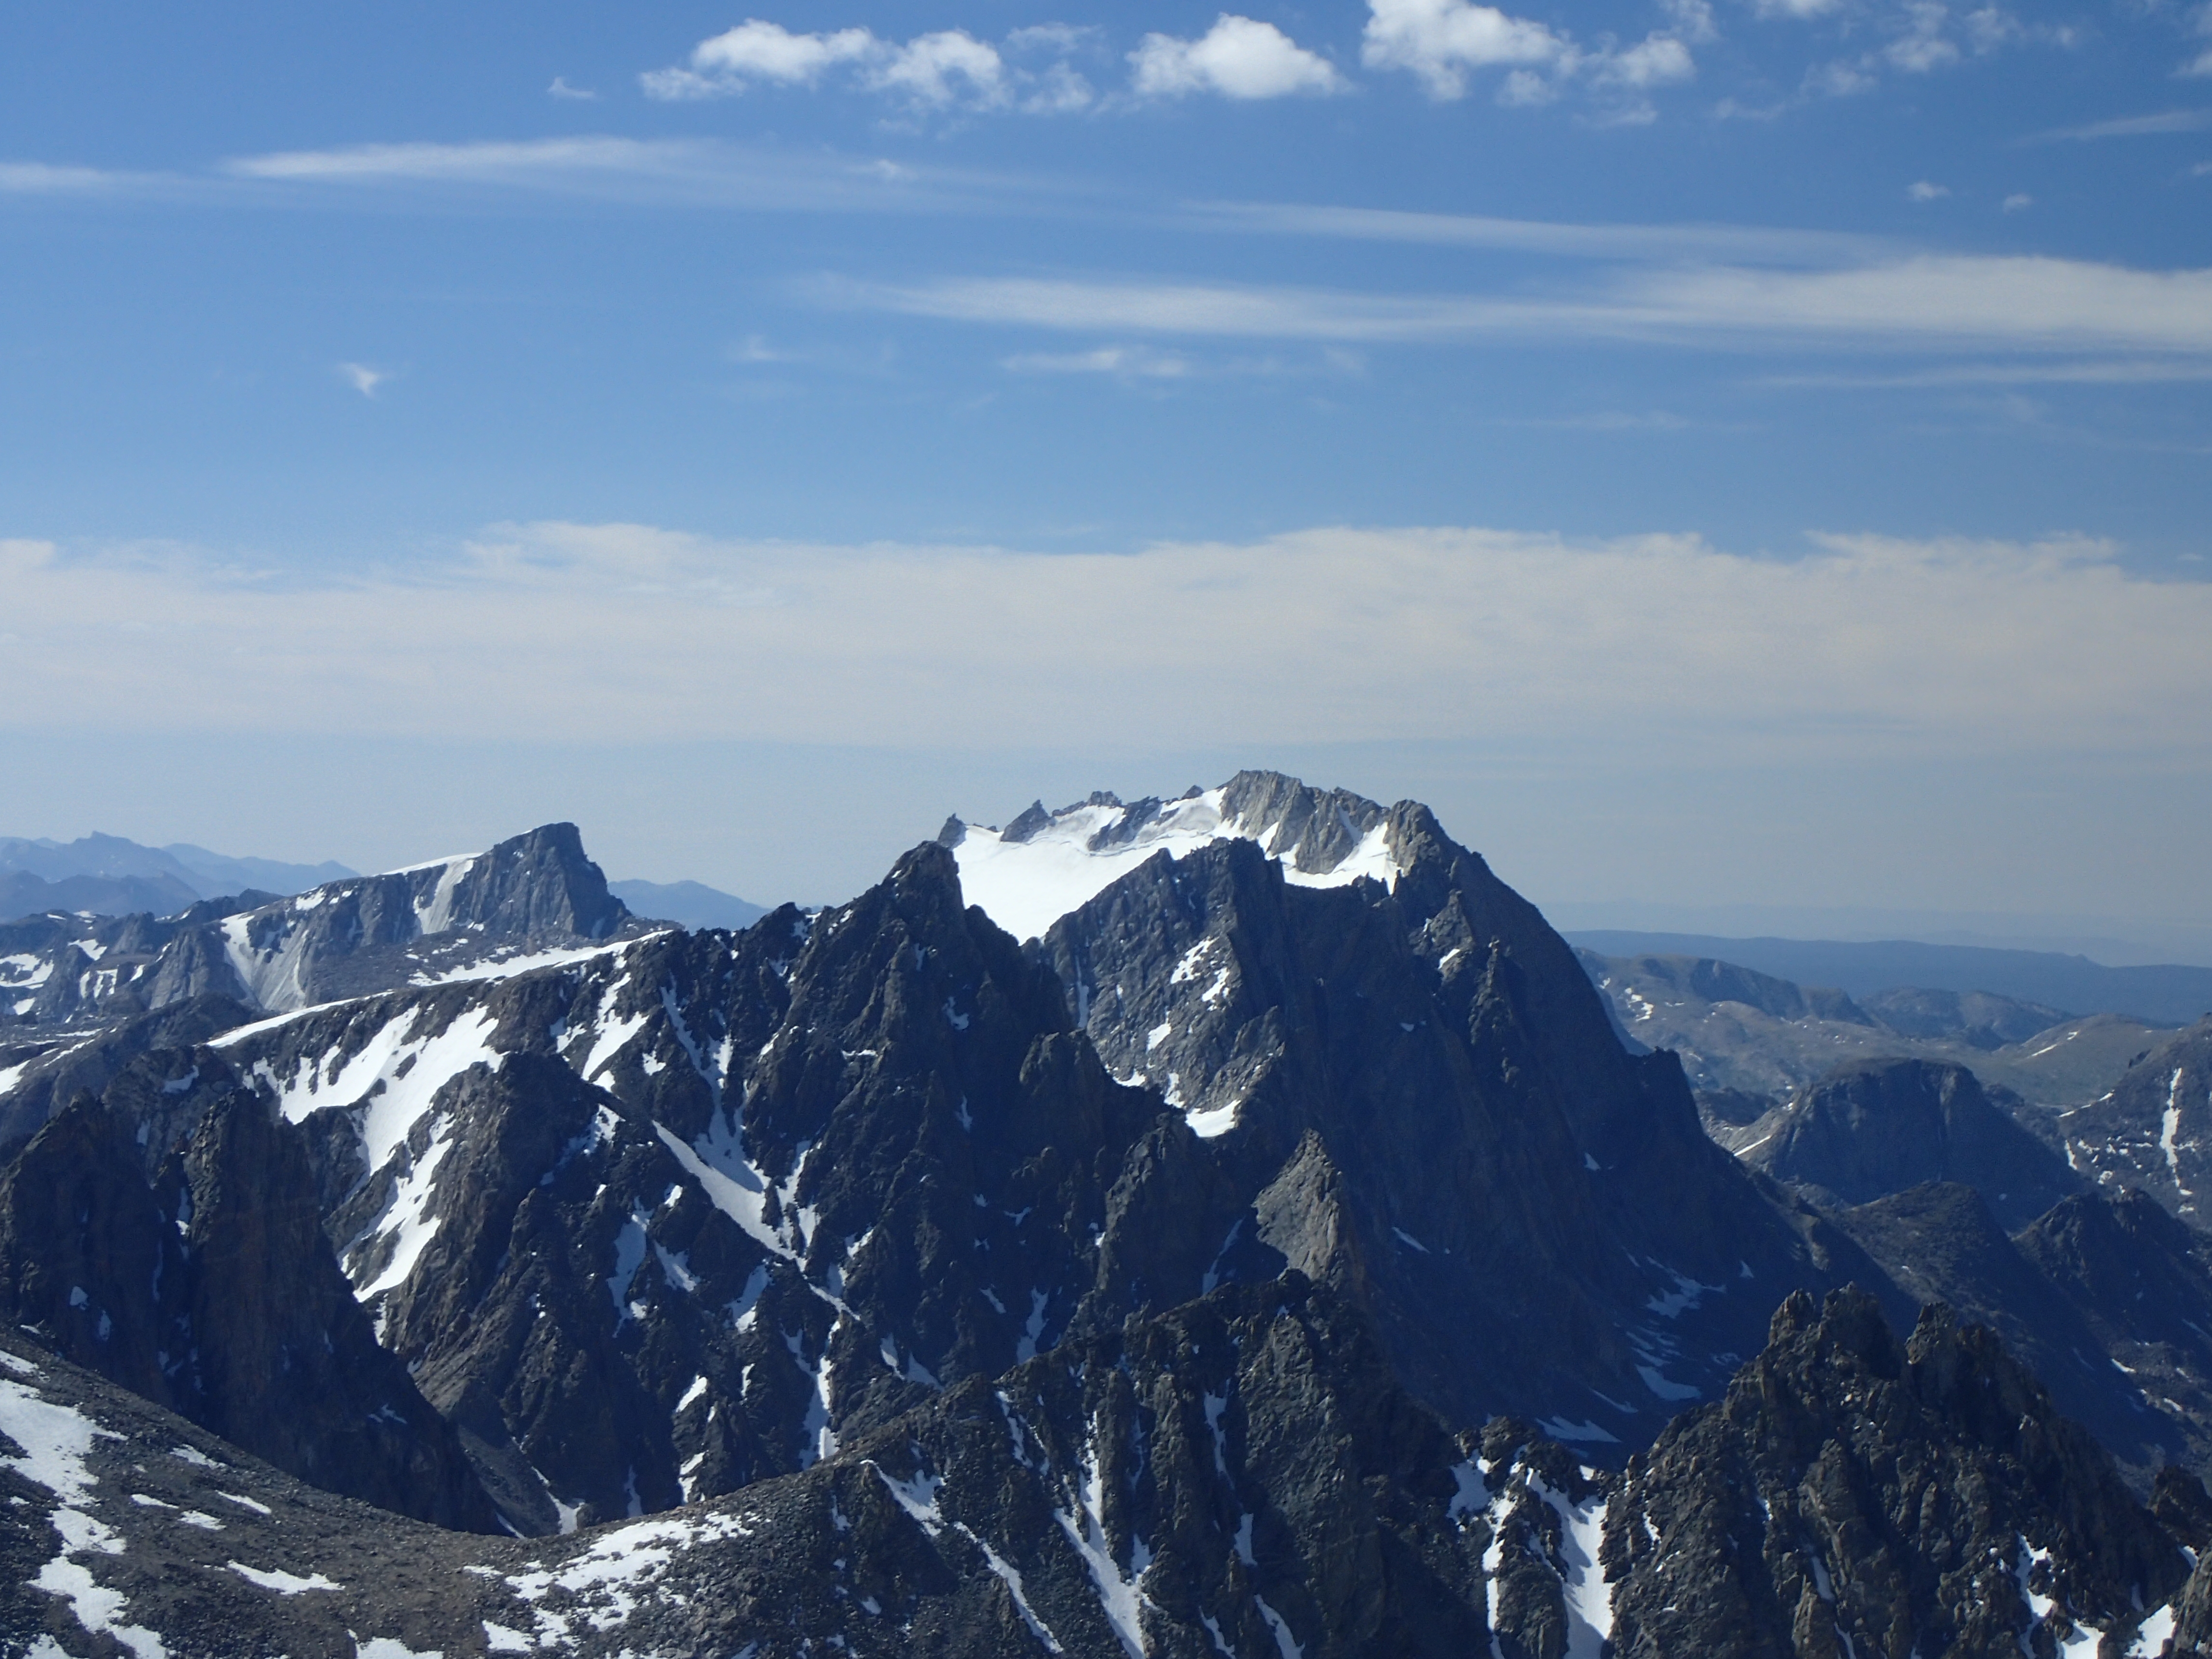 Fremont Peak (third highest peak in Wyoming) as seen from Gannett